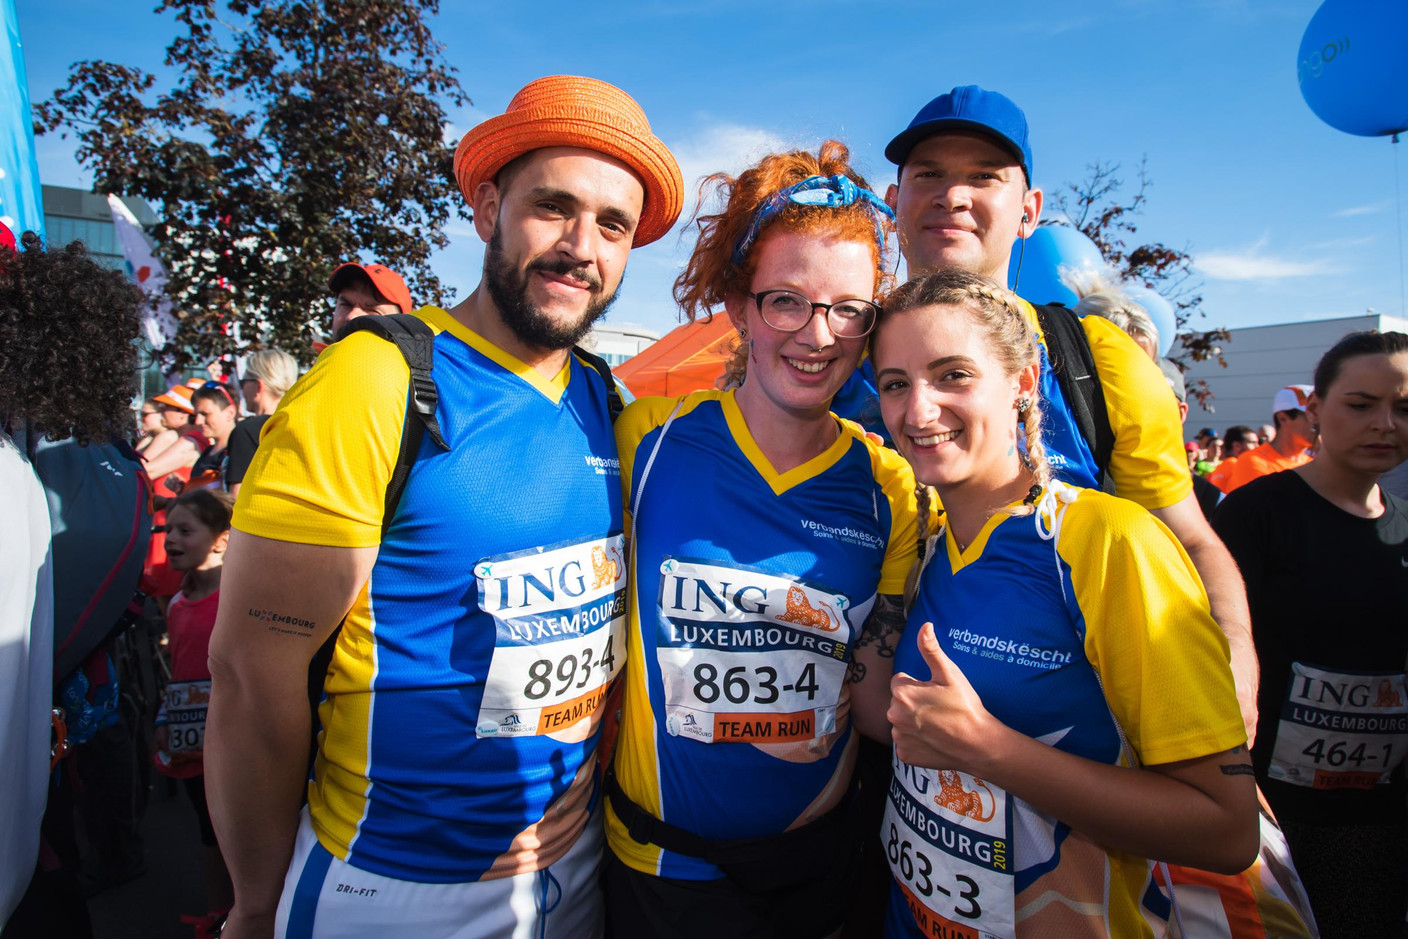 L’équipe de Verbandskëscht - soins & aides à domicile était présente sur la ligne de départ pour la 14e édition de l’ING Night Marathon Luxembourg. (Photo: Nader Ghavami)